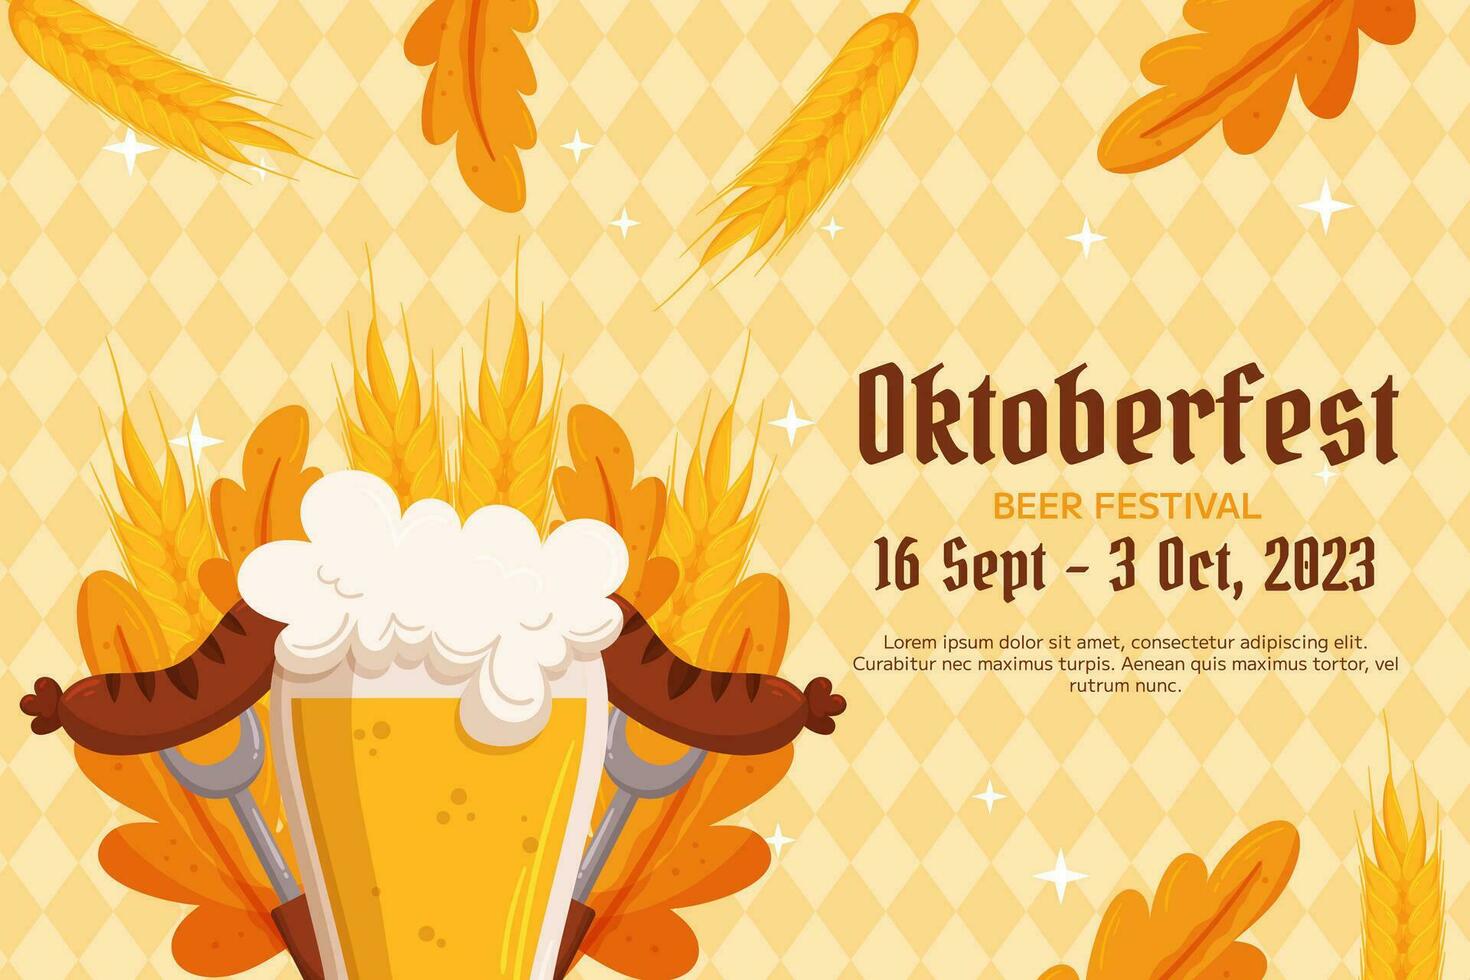 oktoberfeest Duitse bier festival achtergrond. ontwerp met glas van bier, vorken met gegrild worst, tarwe en bladeren. licht geel ruit patroon vector